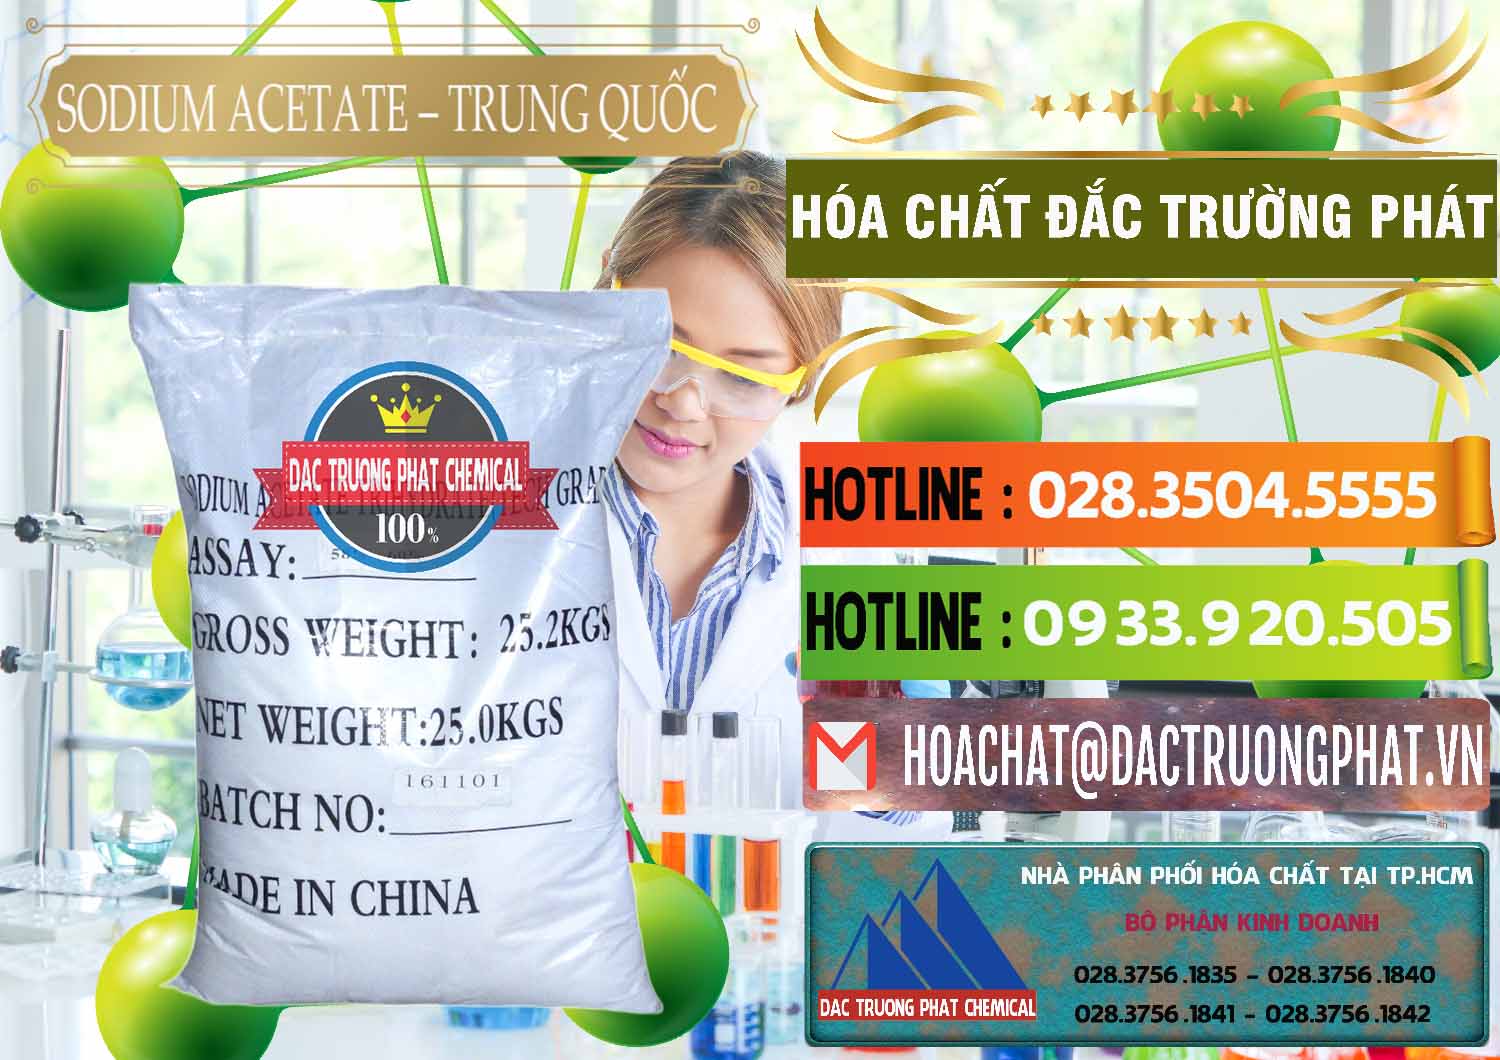 Cty chuyên kinh doanh và bán Sodium Acetate - Natri Acetate Trung Quốc China - 0134 - Cty cung cấp và kinh doanh hóa chất tại TP.HCM - cungcaphoachat.com.vn